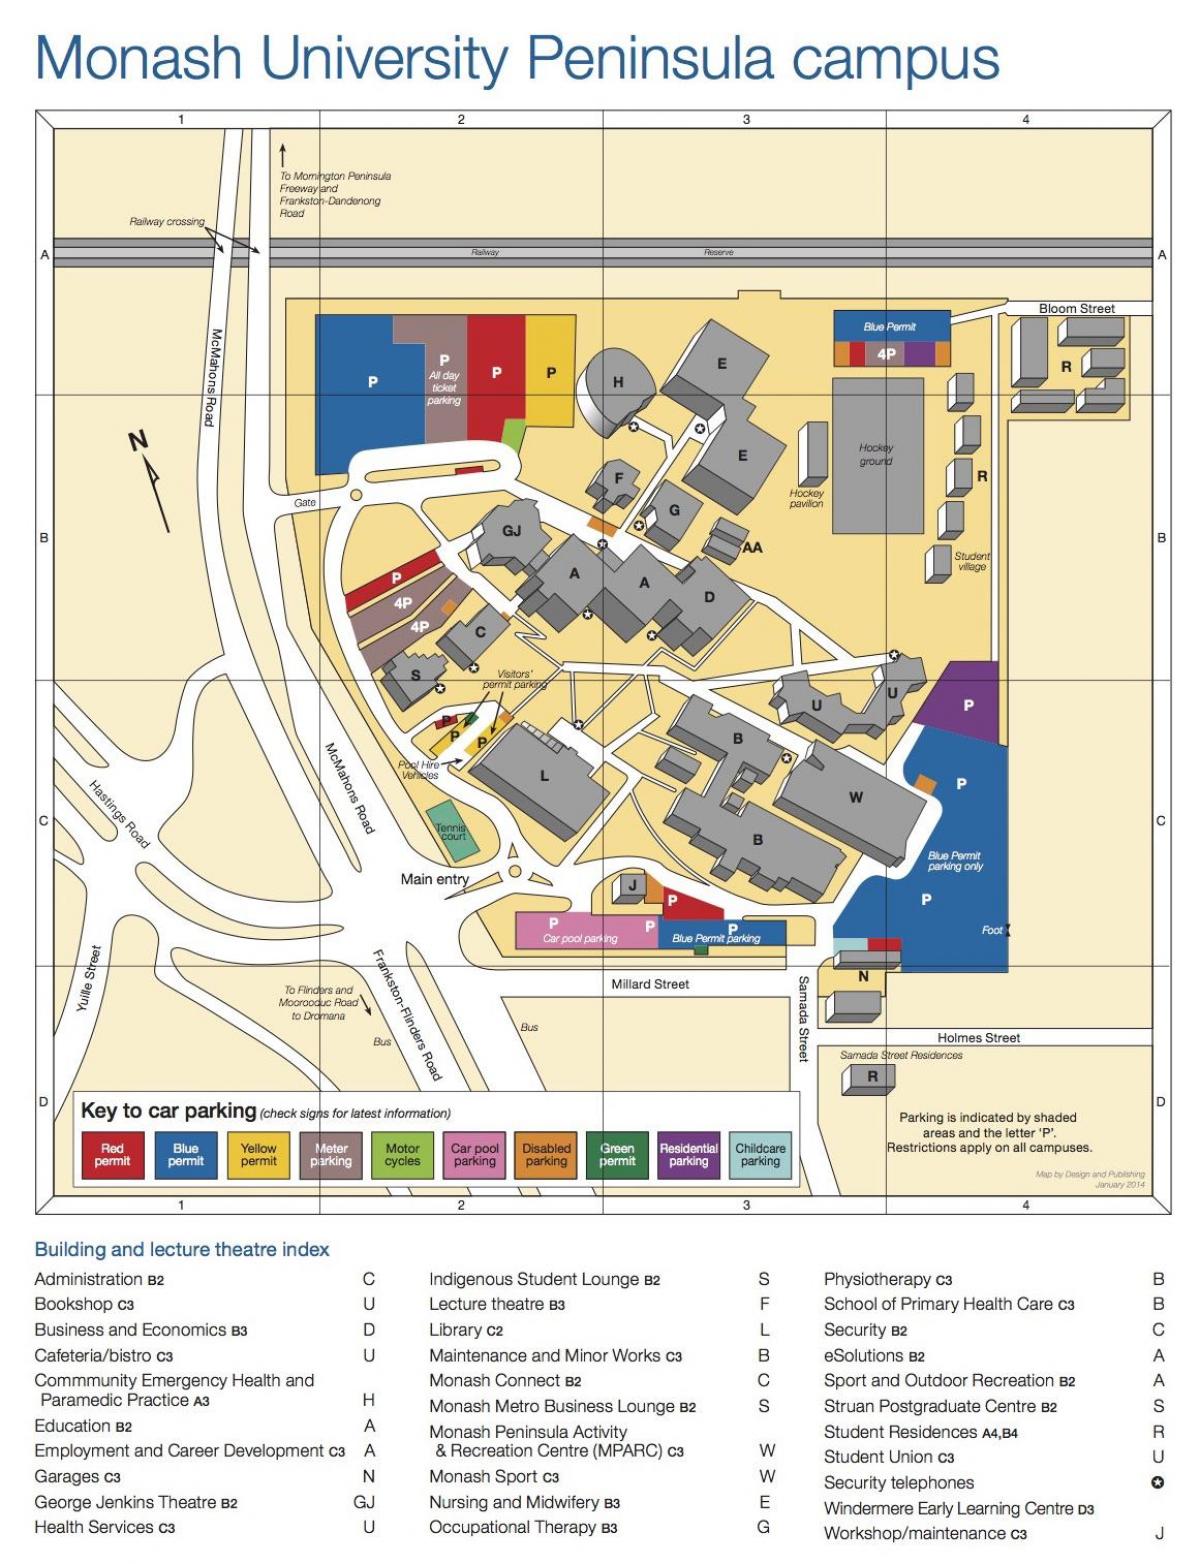 Monash university campus žemėlapis